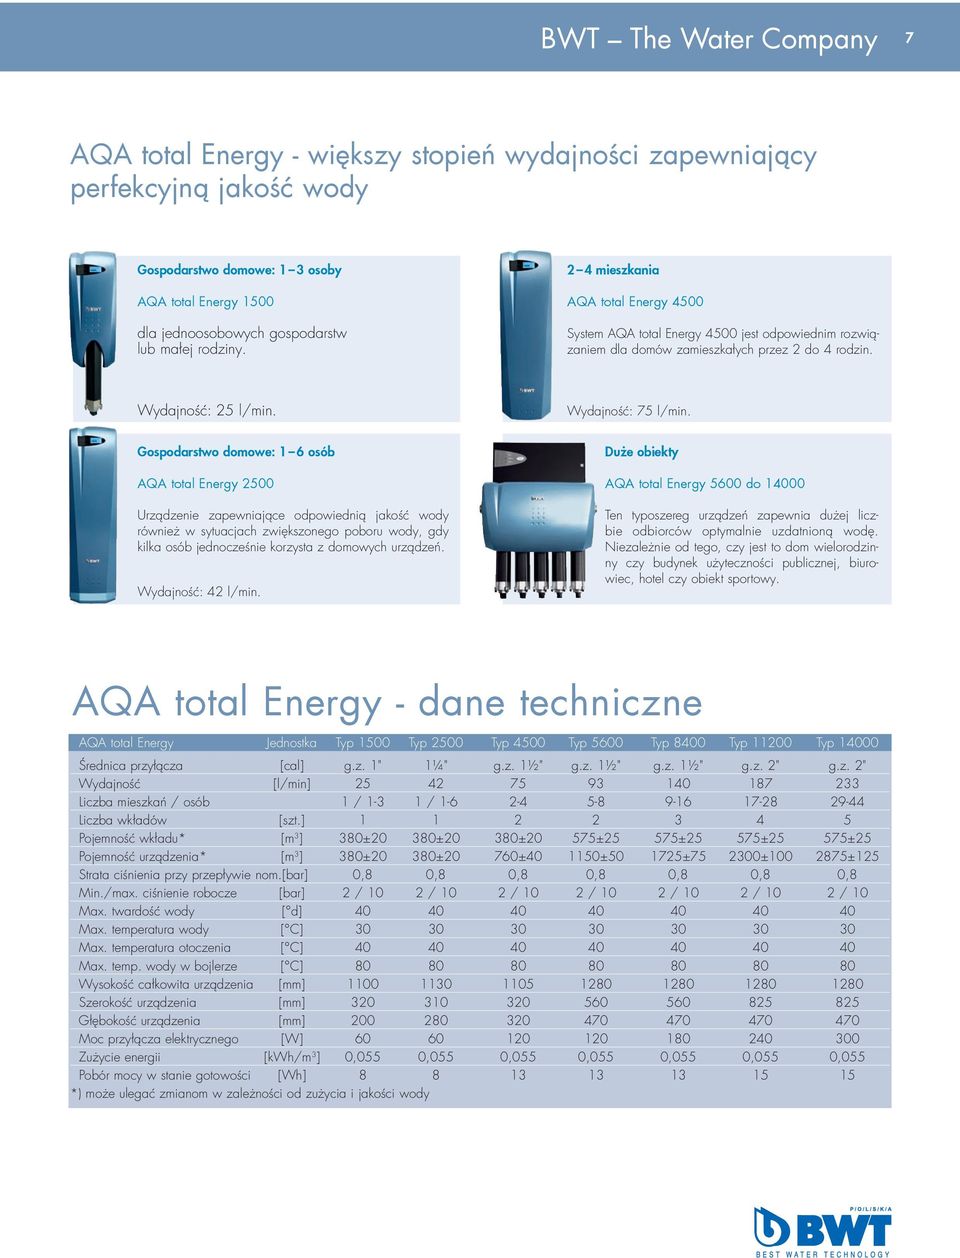 Gospodarstwo domowe: 1 6 osób AQA total Energy 2500 Urządzenie zapewniające odpowiednią jakość wody również w sytuacjach zwiększonego poboru wody, gdy kilka osób jednocześnie korzysta z domowych